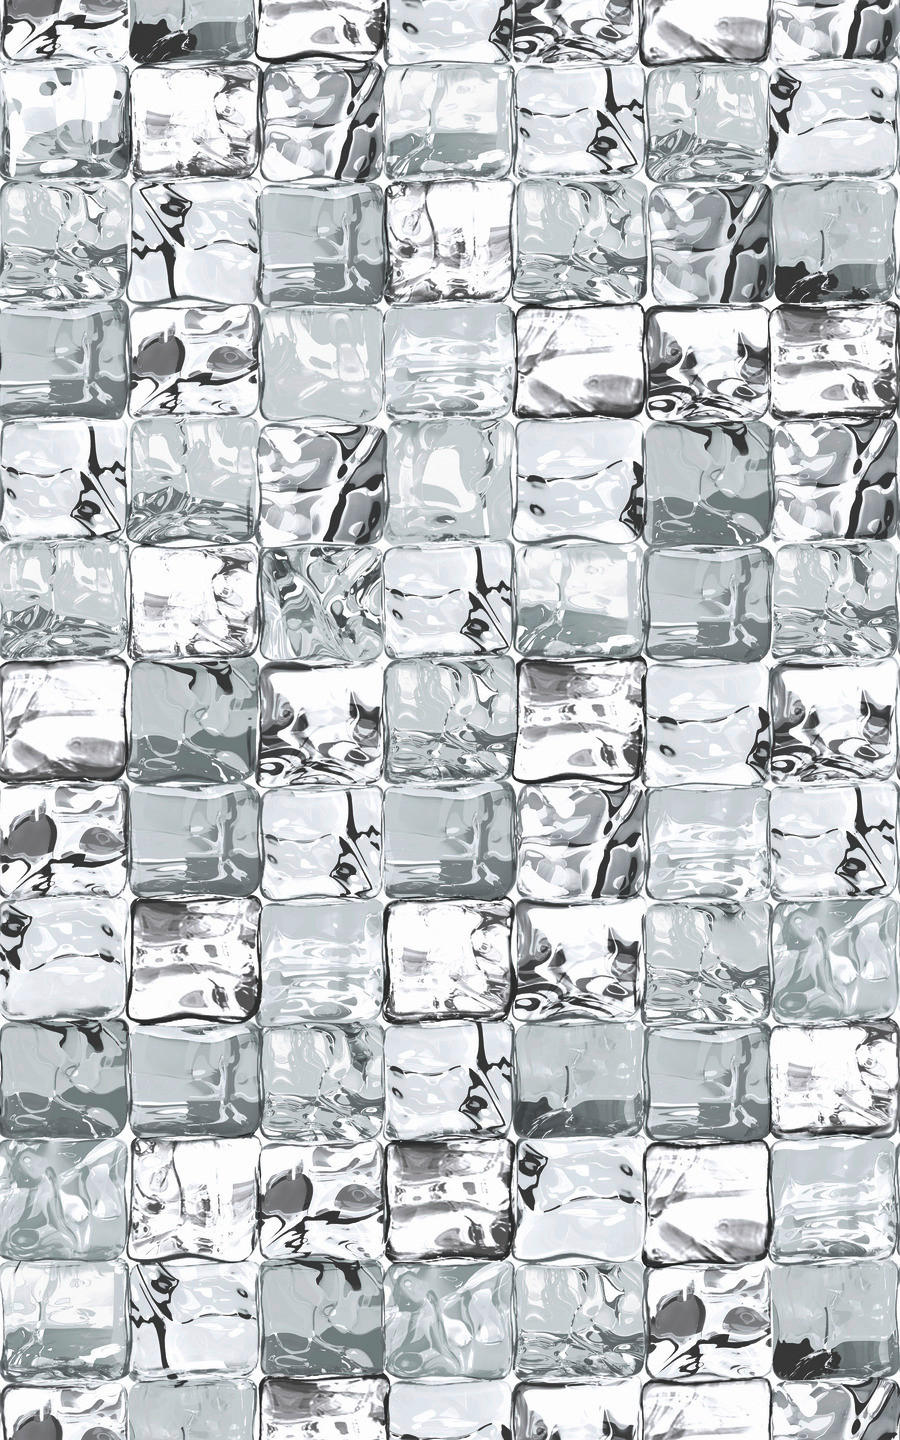 d-c-fix Fensterfolie Ice Cube grau transparent B/L: ca. 45x150 cm Fensterfolie_ice-cube grau - transparent/grau (45,00/150,00cm)